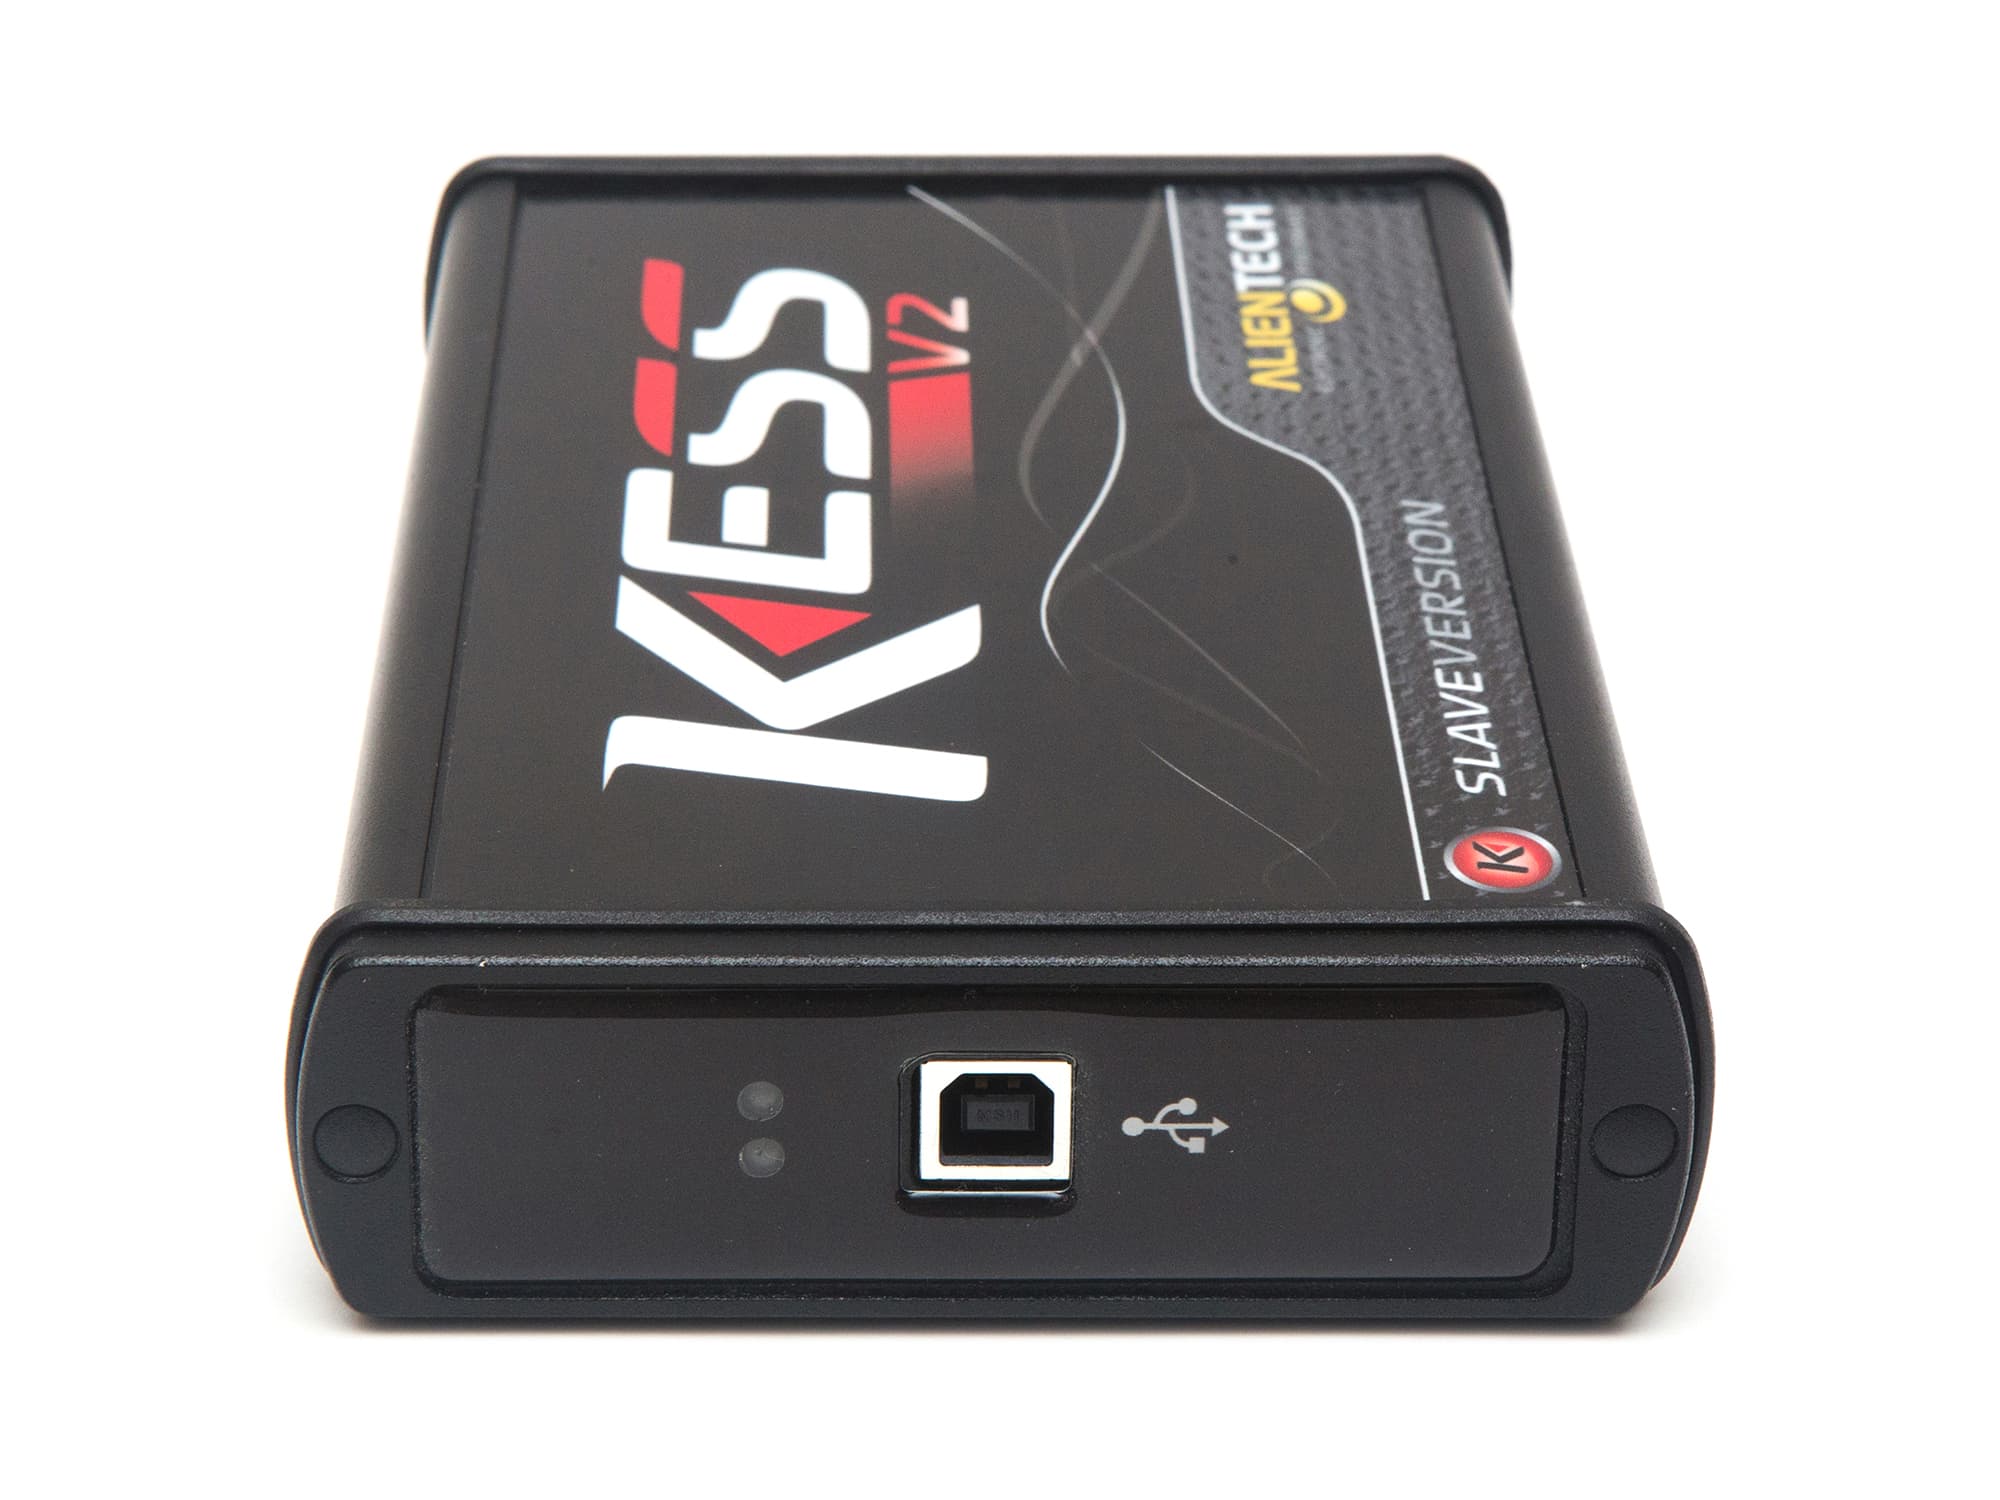 Kess V2 Slave hardware solo no hay protocolos Puerto Rico